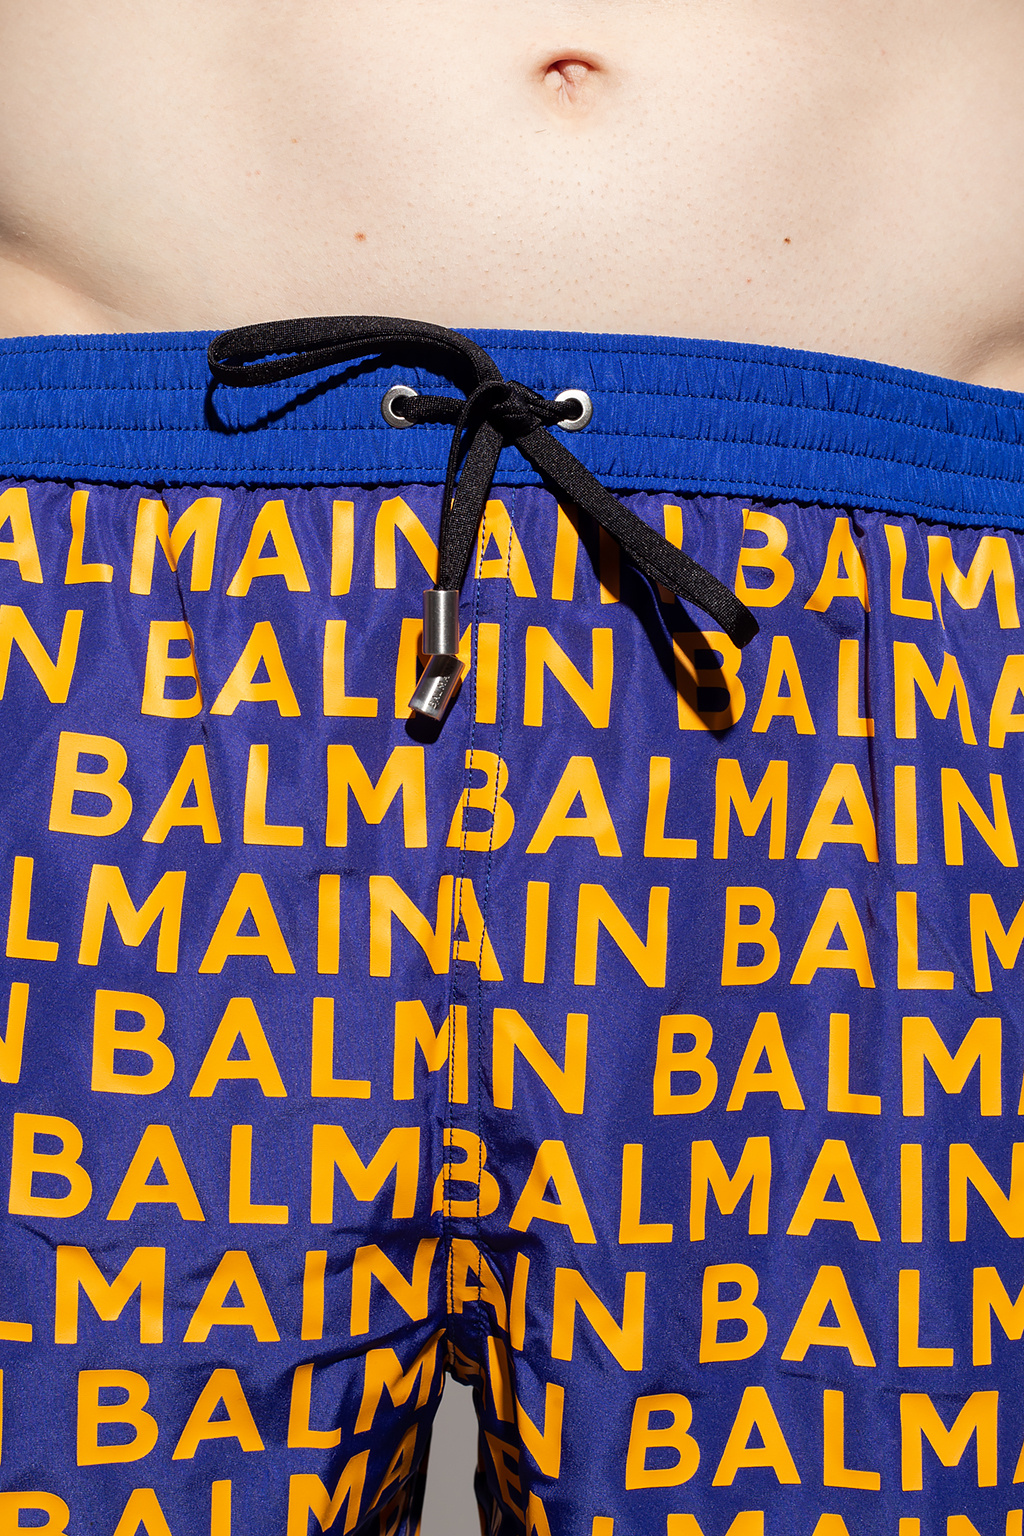 balmain T-SHIRT Swim shorts